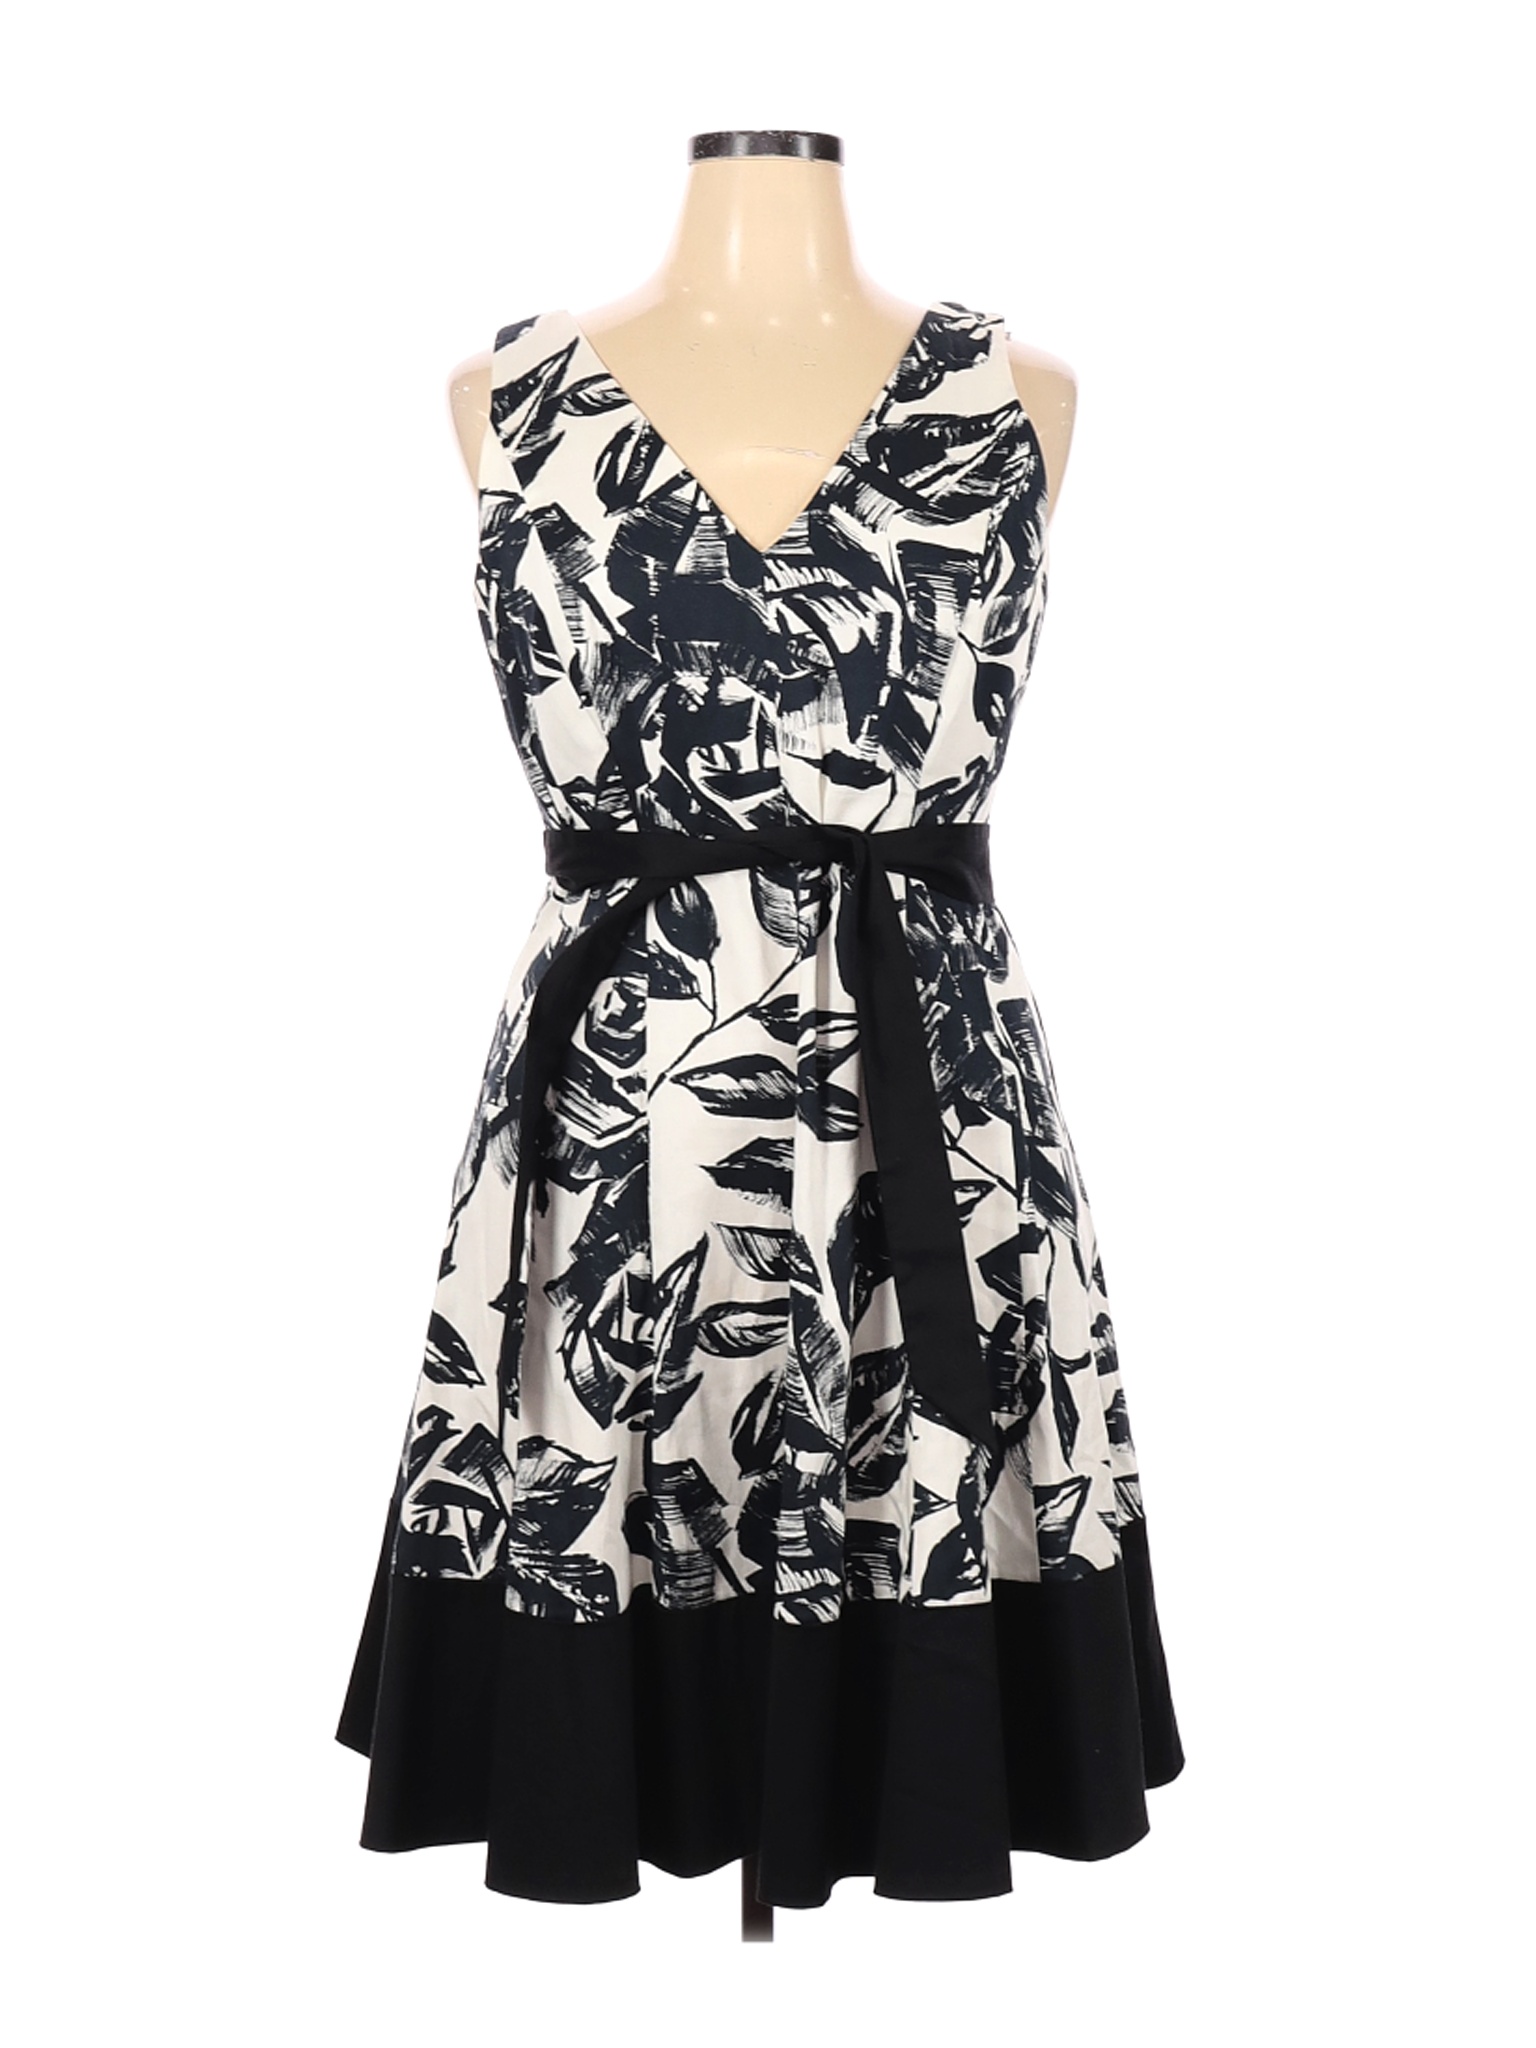 Jones New York Women Black Casual Dress 16 | eBay